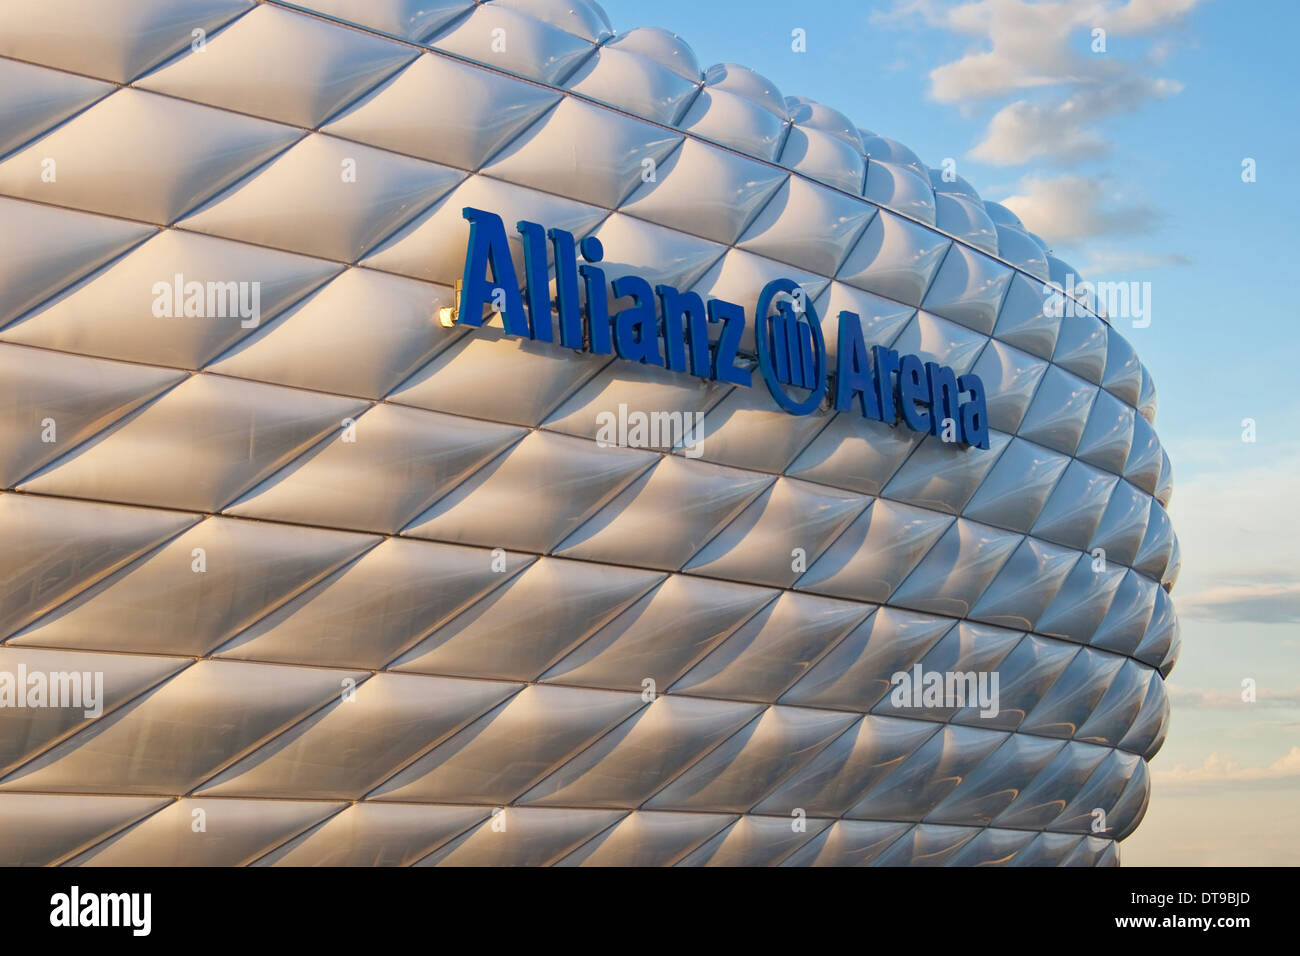 Détail de la membrane de la coquille du stade de football Allianz Arena à Munich, Allemagne. Banque D'Images